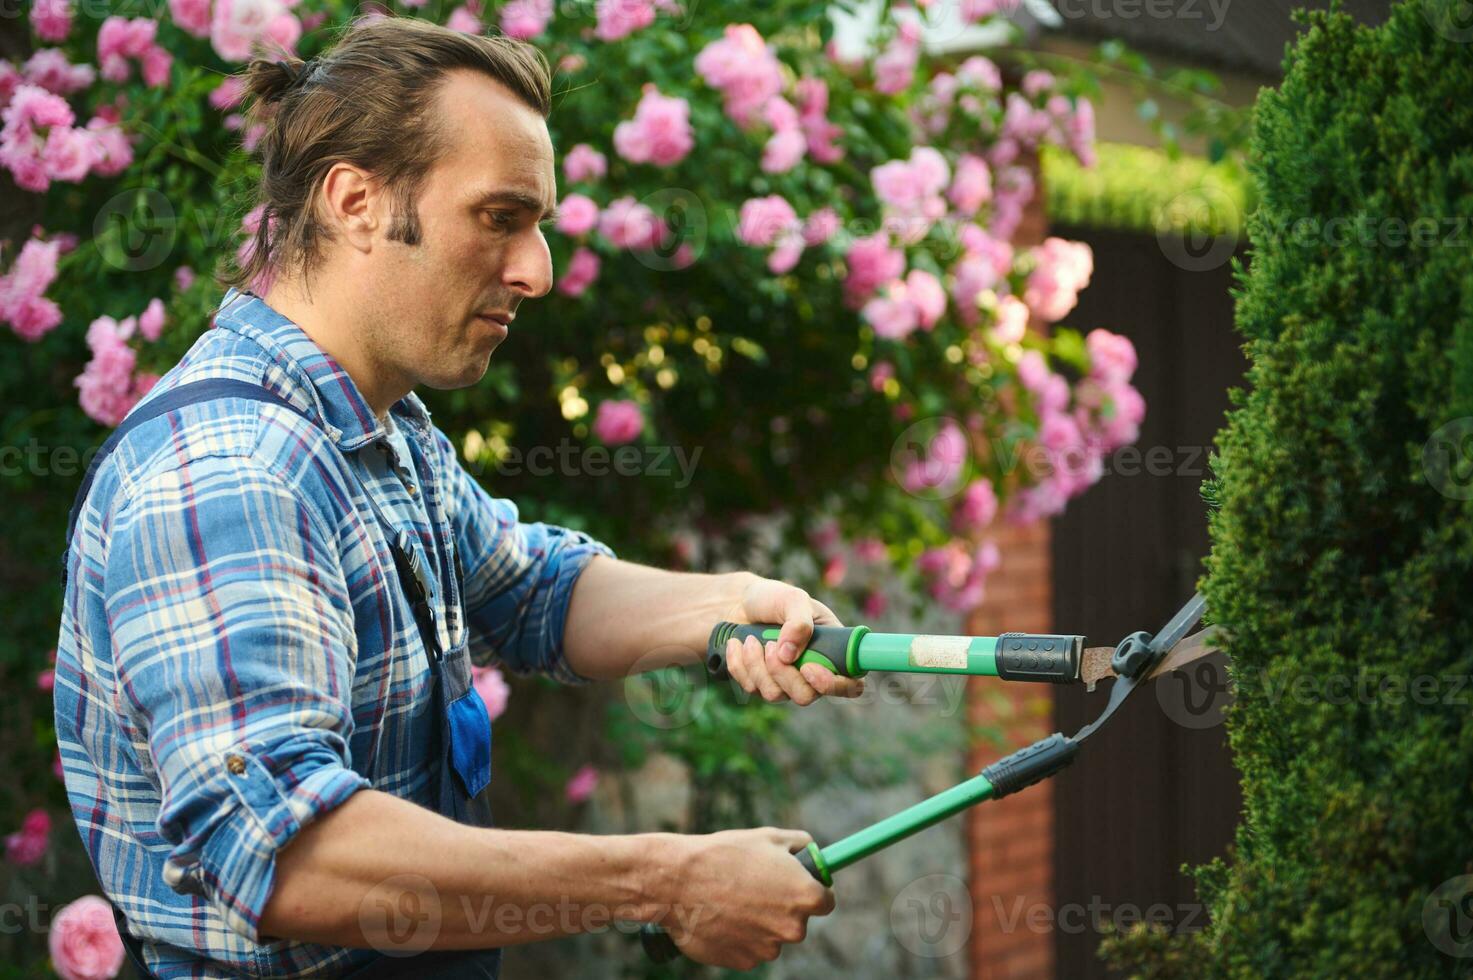 sida porträtt av professionell manlig trädgårdsmästare skärande växter, använder sig av beskärning sax för trimning och skötsel häckar i gård foto